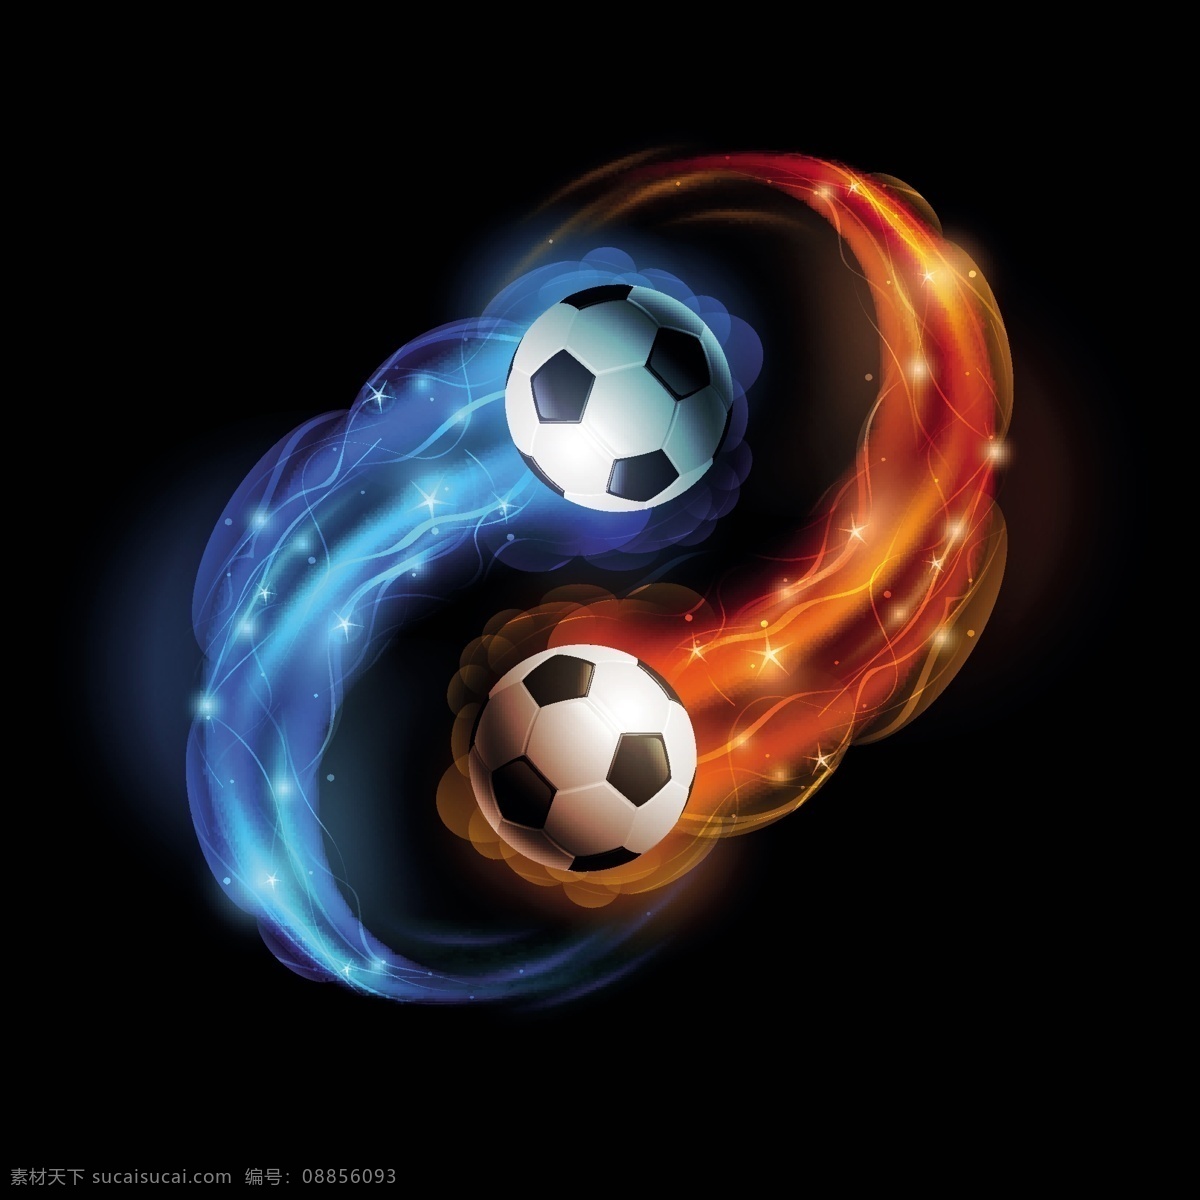 足球 欧洲世界杯 手绘 世界杯 欧洲杯 亚洲杯 世界杯海报 世界杯背景 足球俱乐部 足球运动 体育运动 矢量 生活百科 体育用品